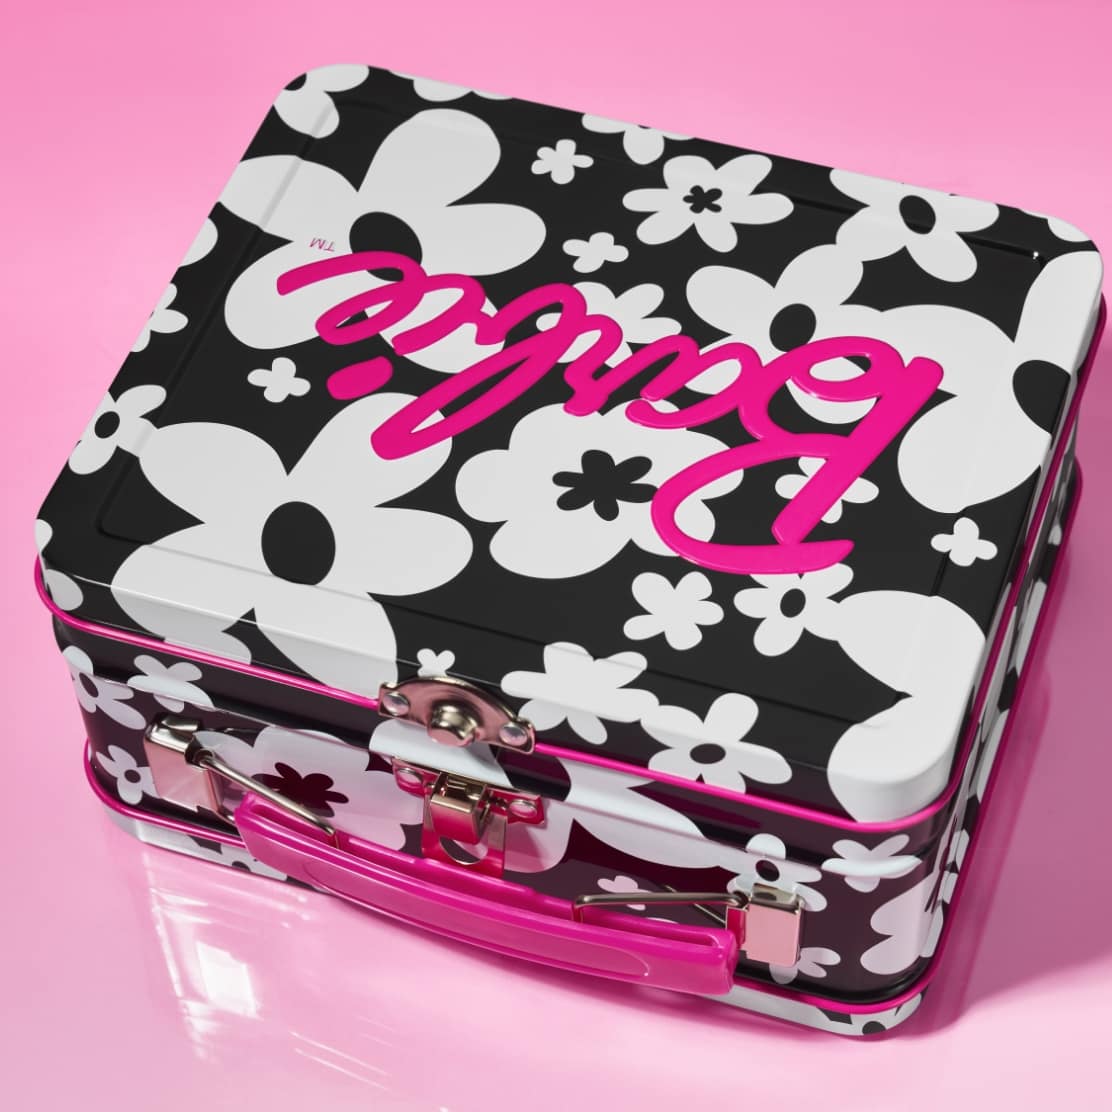 Photo une. Boîte à repas Barbie, au motif floral graphique noir et blanc, rehaussé de rose vif.